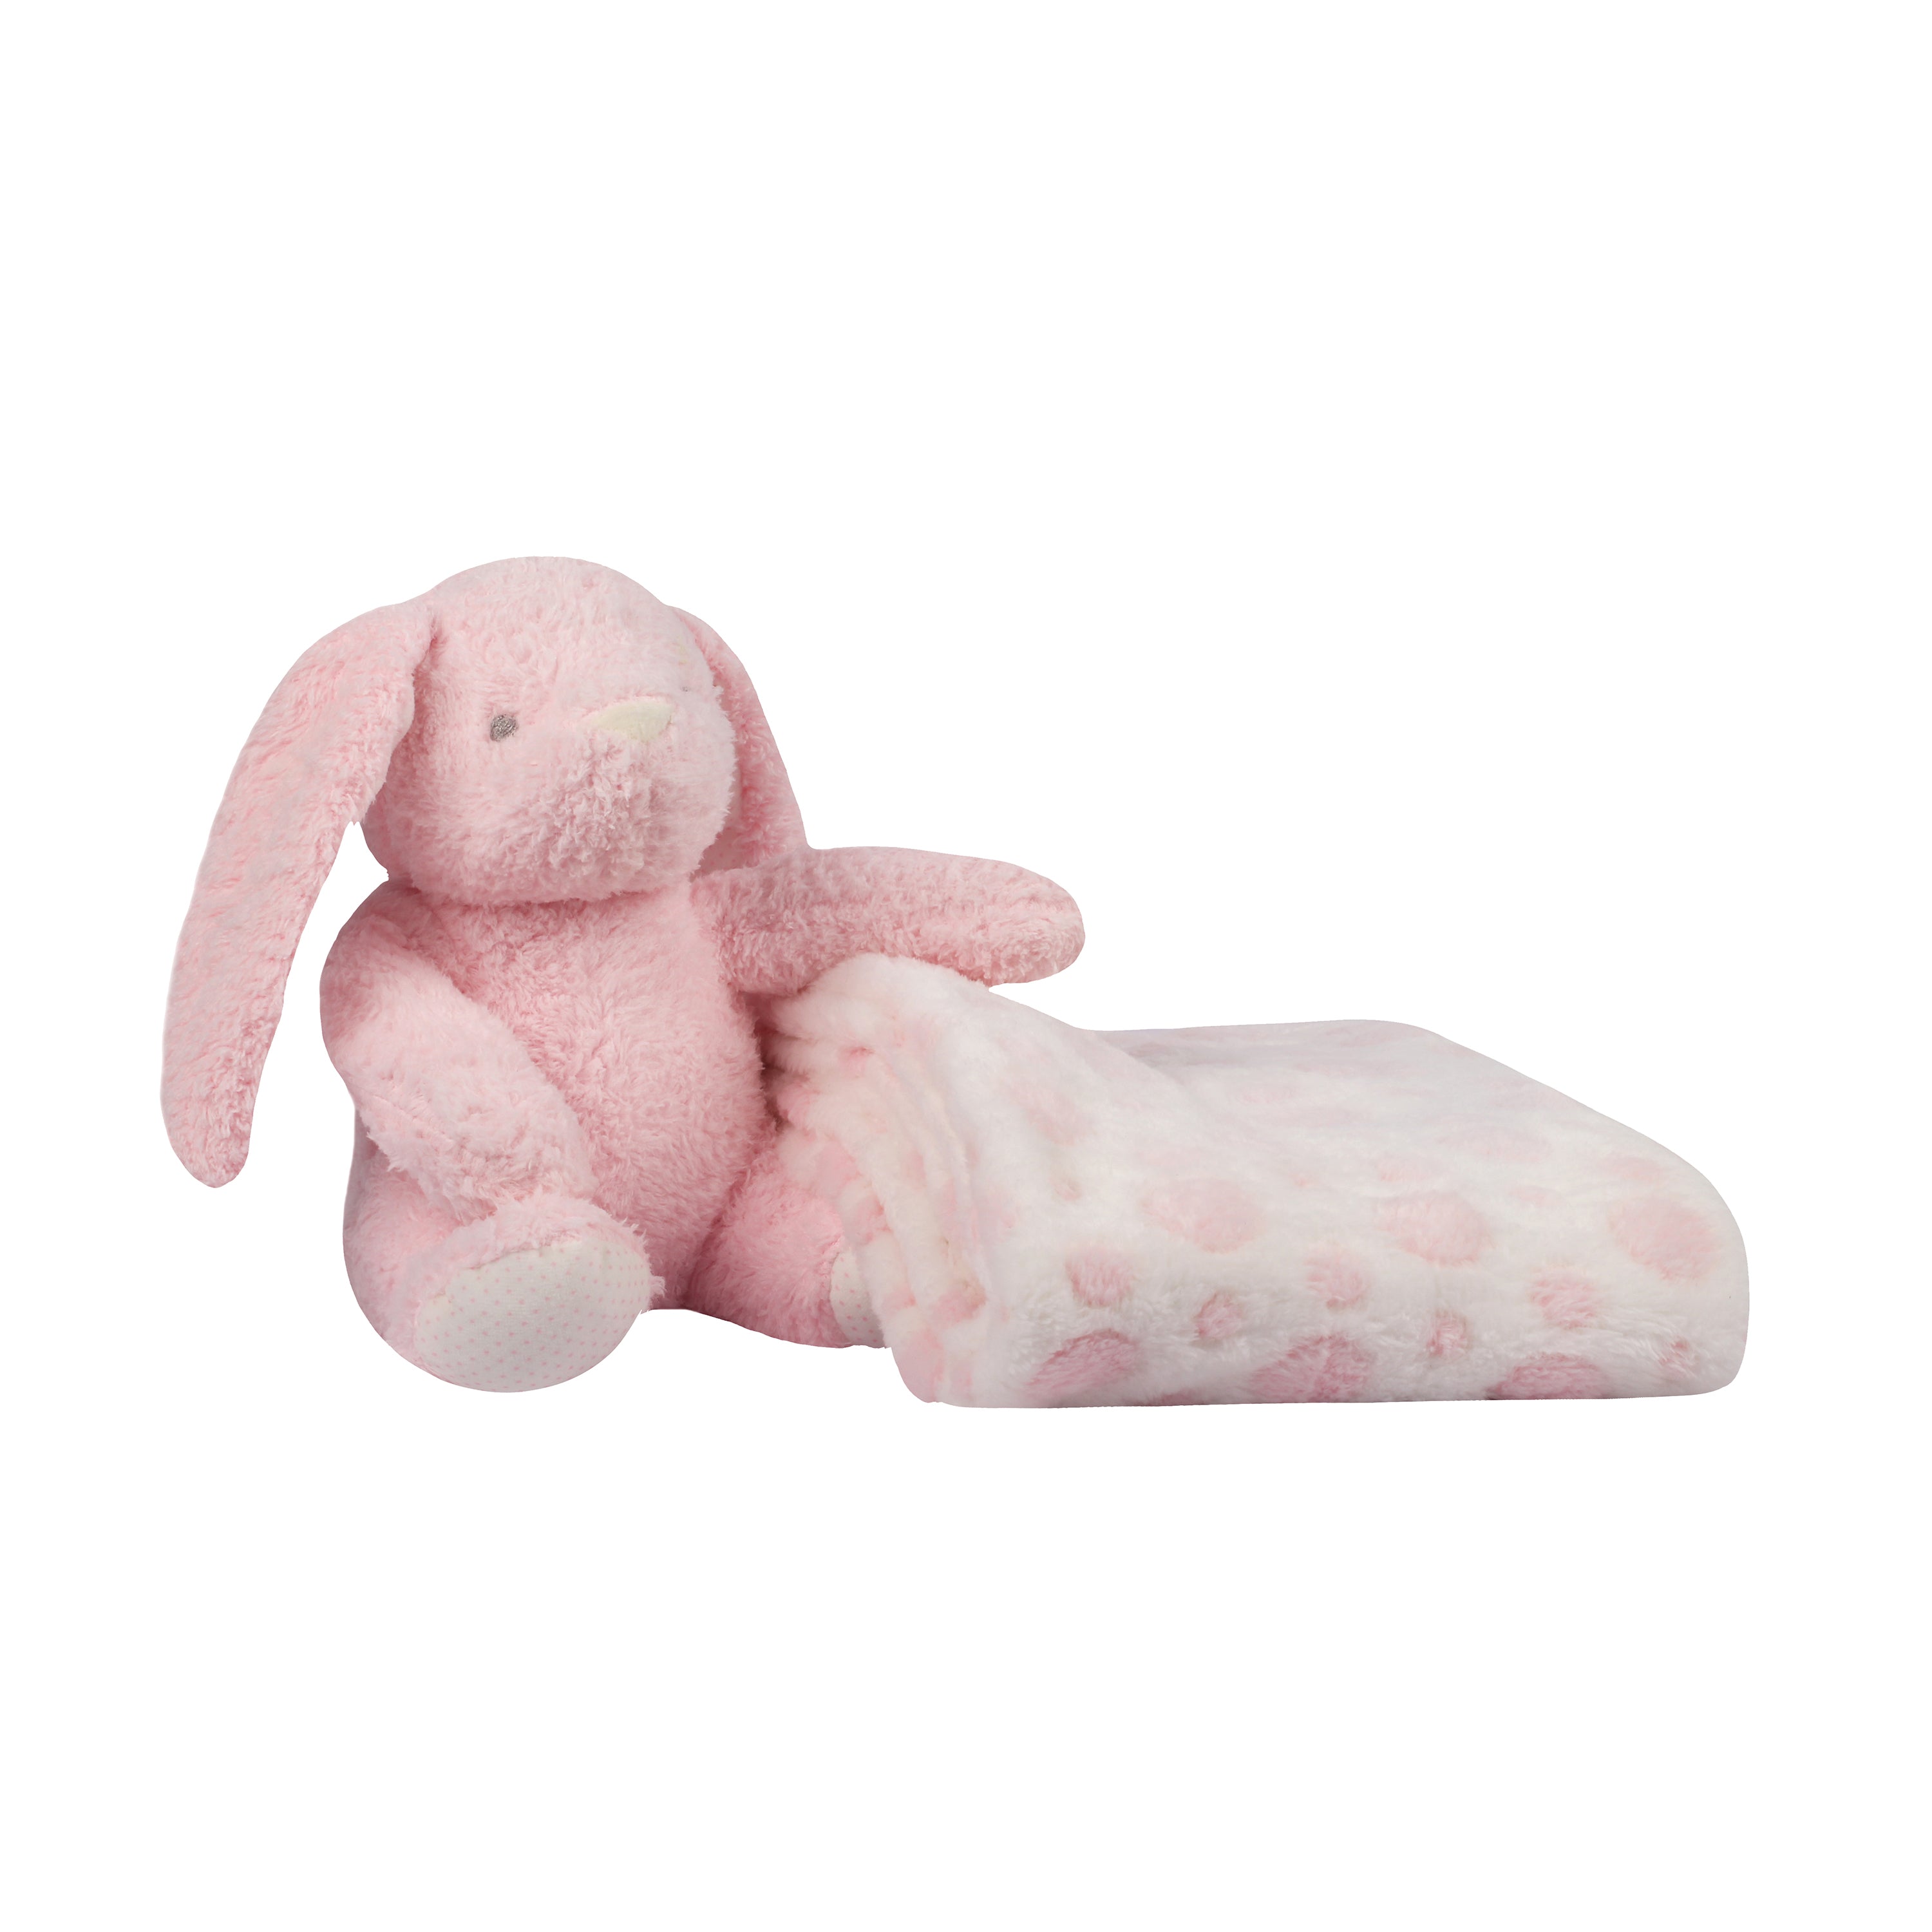 Abracadabra Toy With Blanket - Bunny